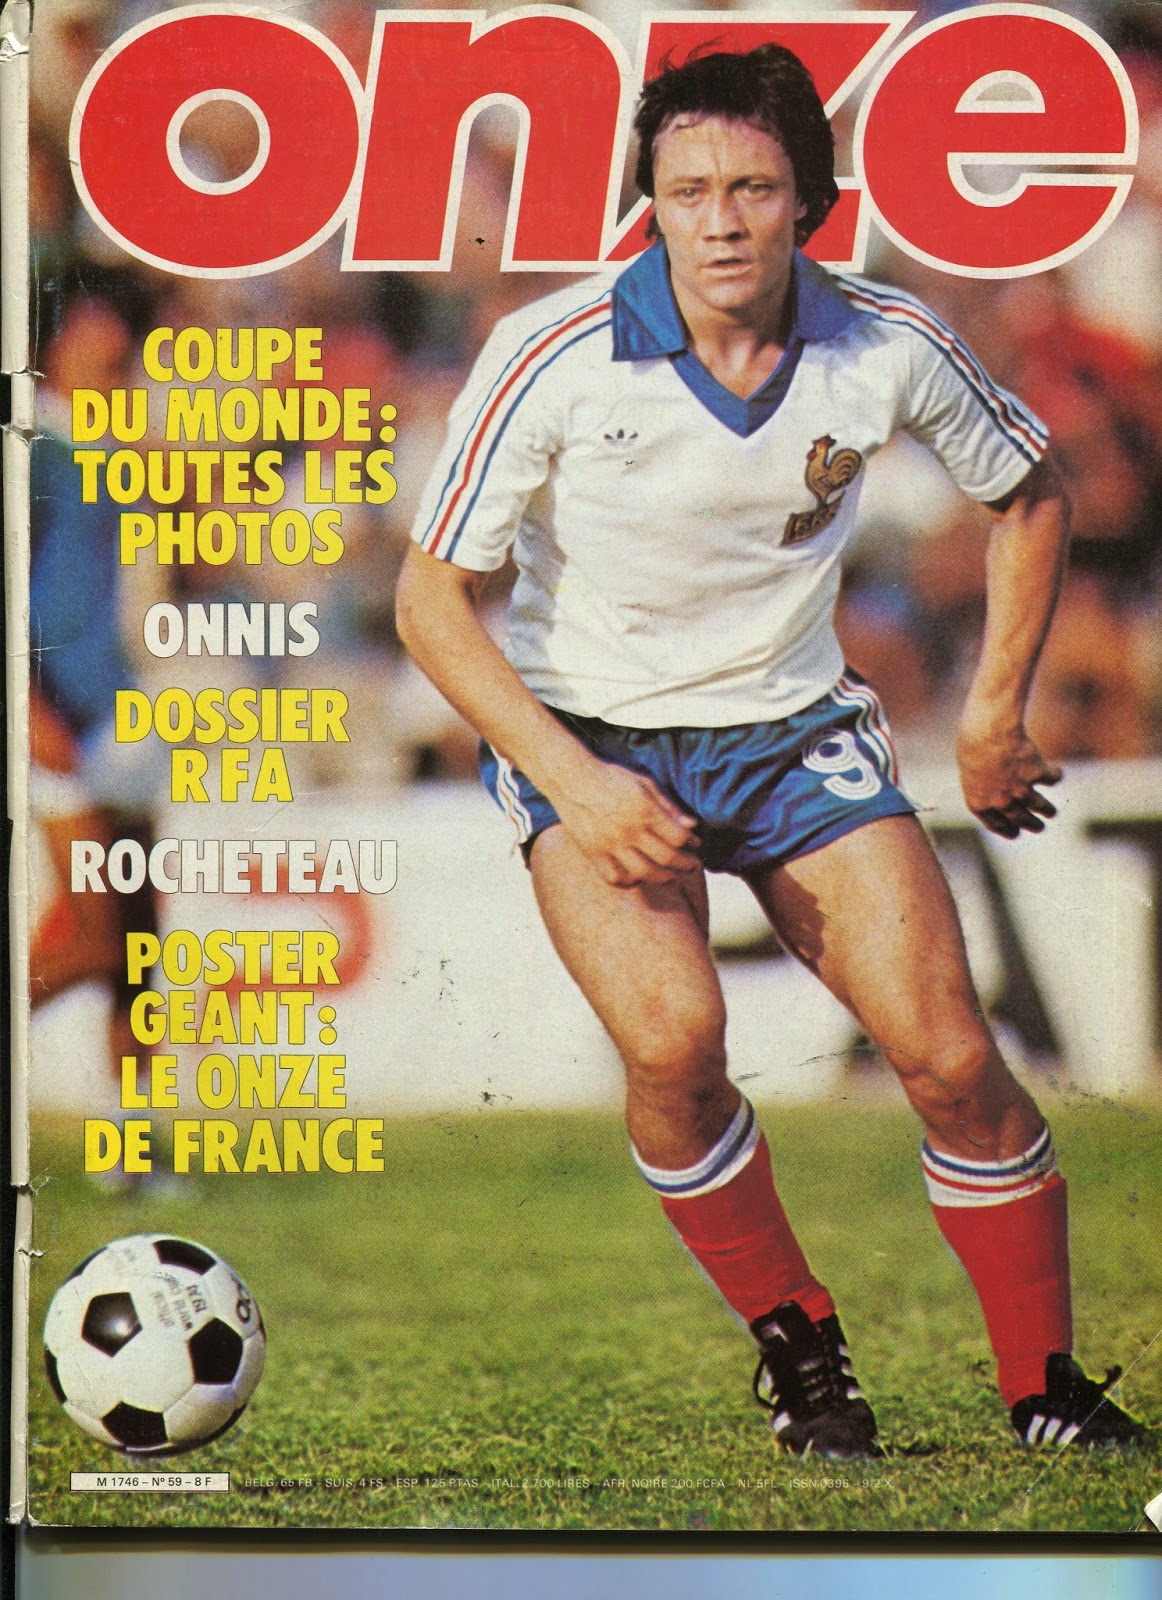 Part magazine. Журнал onze. Magazine 1980. Венгерский футбольный журнал 1980 года.